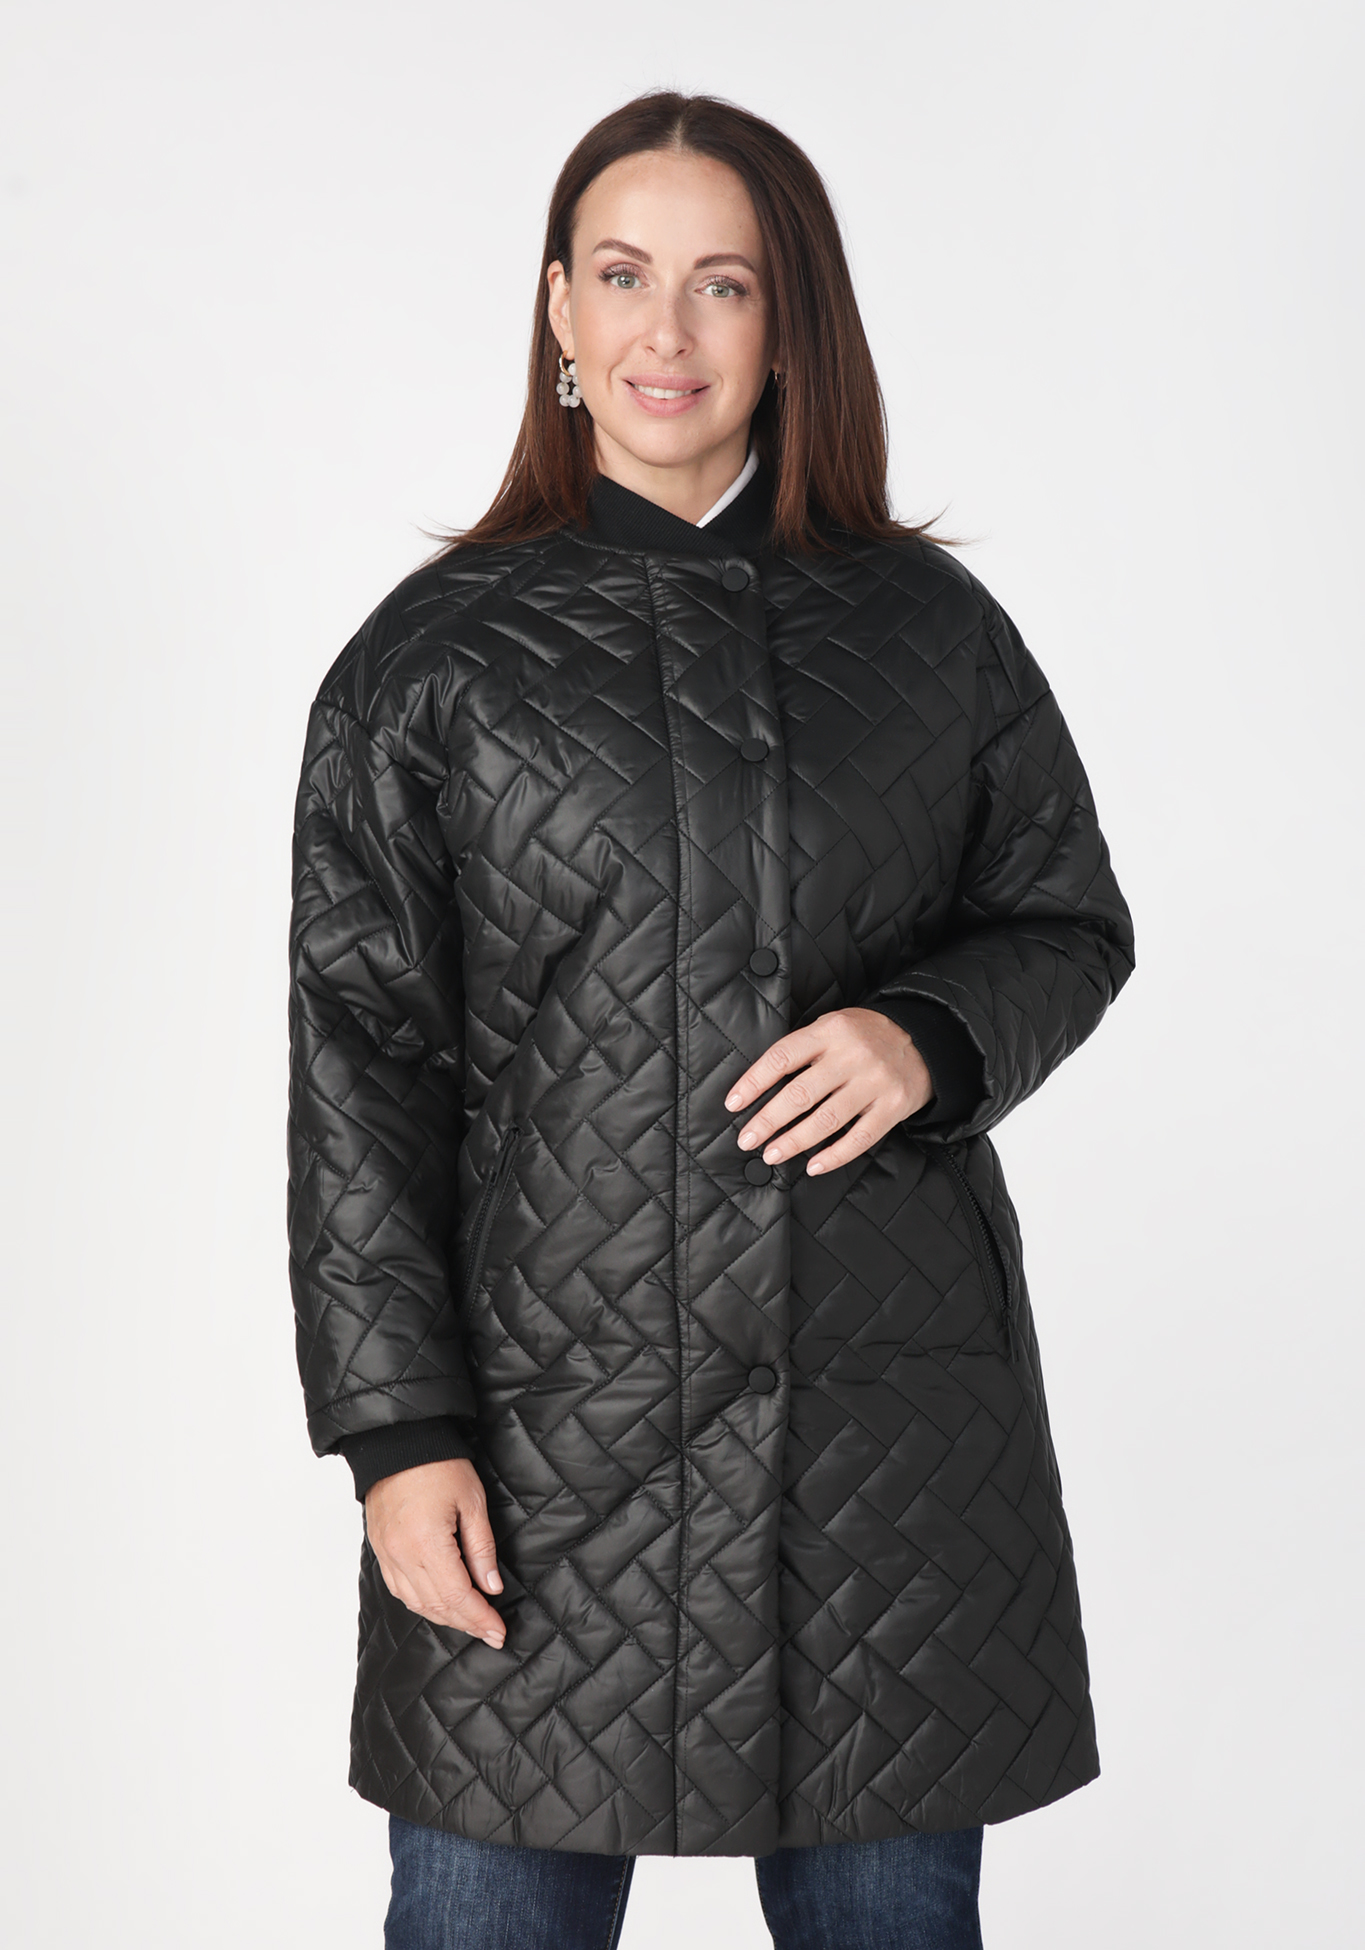 Пальто на молнии Надежда Ангарская, размер 42, цвет черный